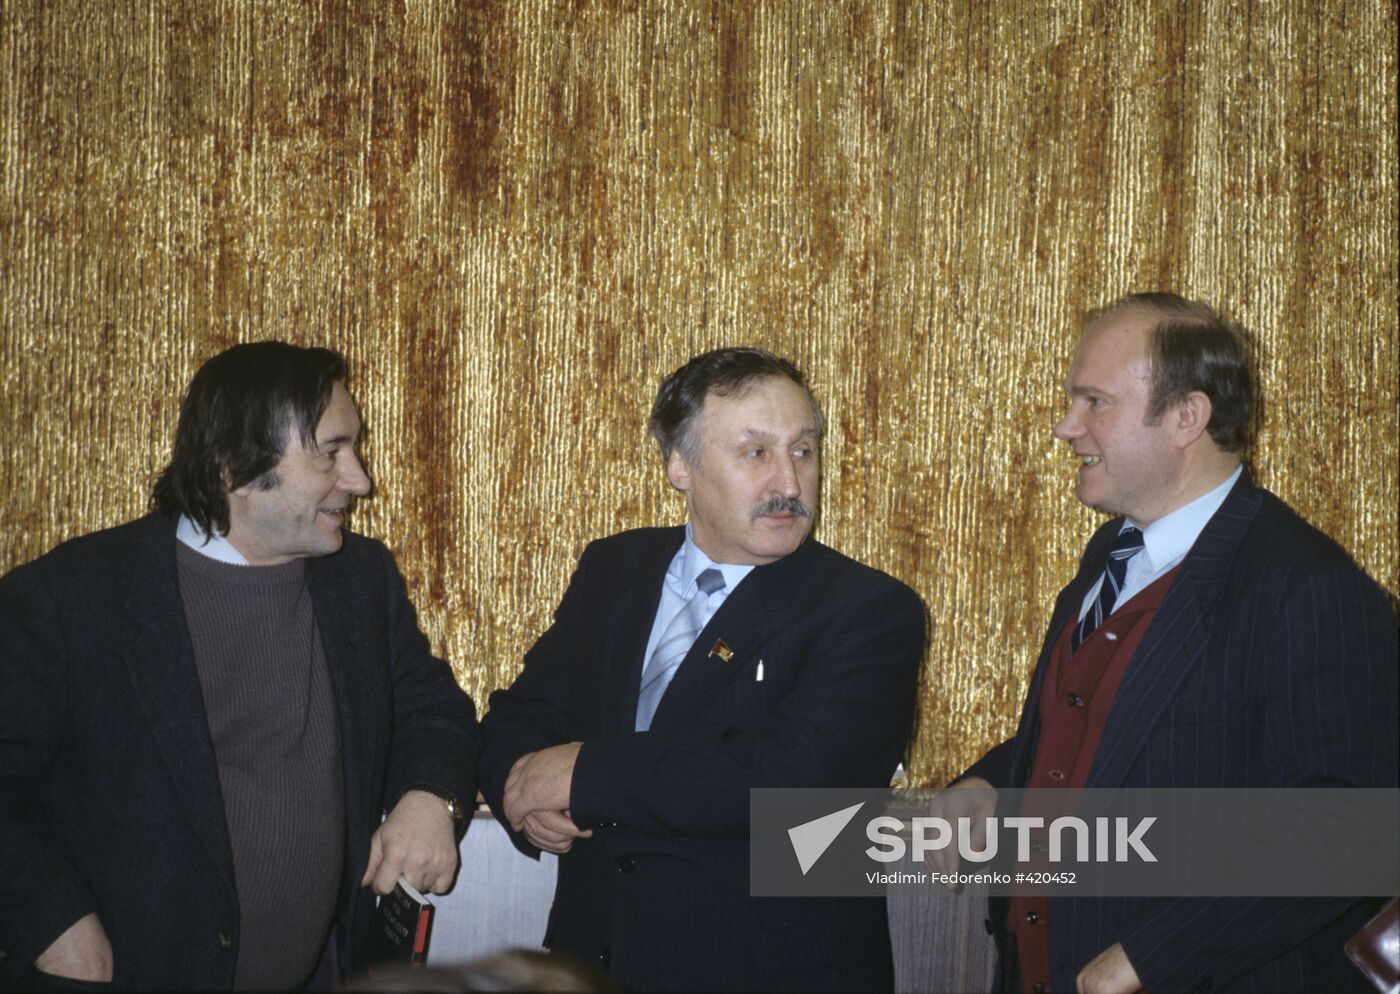 Alexander Prokhanov, Albert Makashov, and Gennady Zyuganov